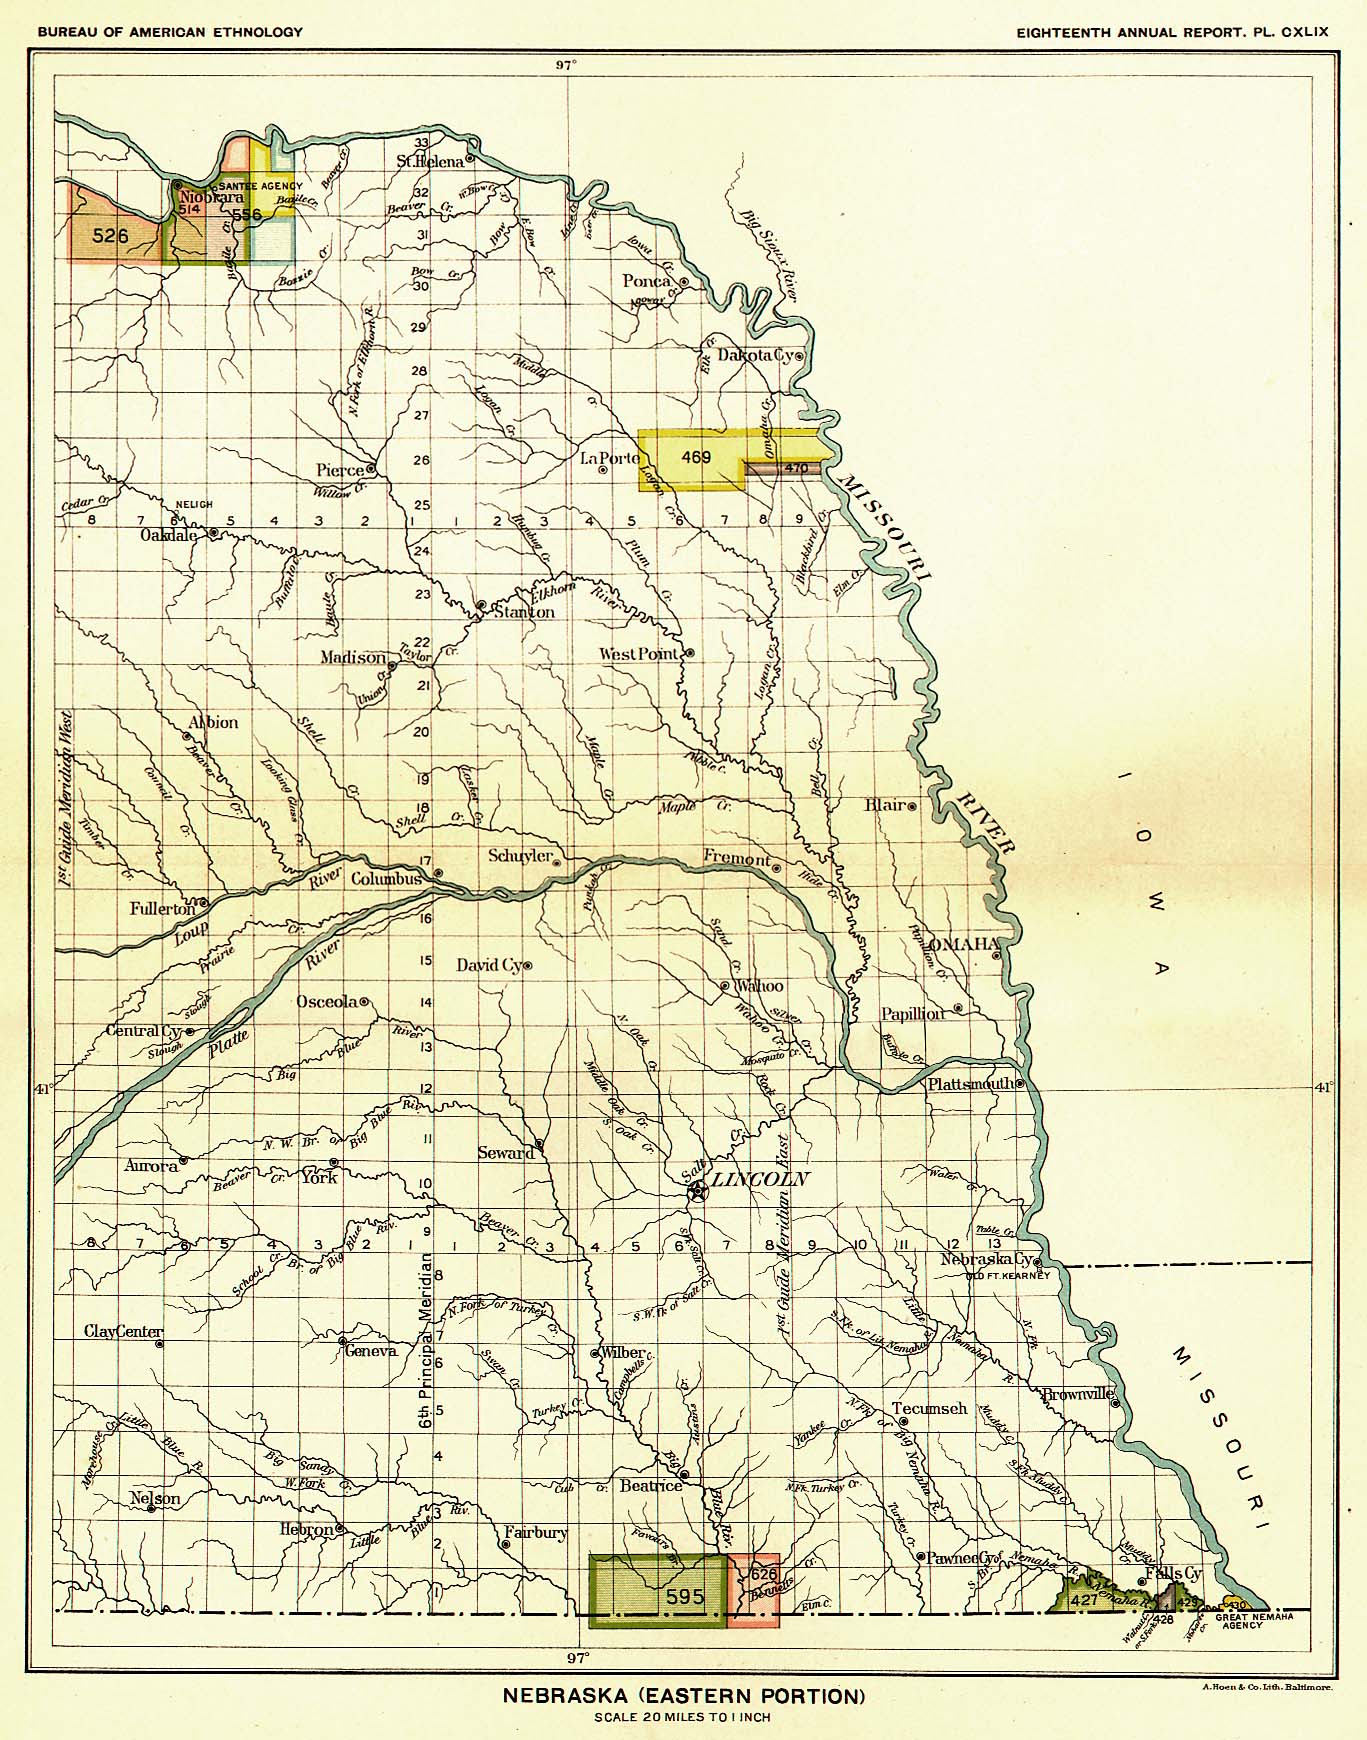 Nebraska (Eastern Portion), Map 42